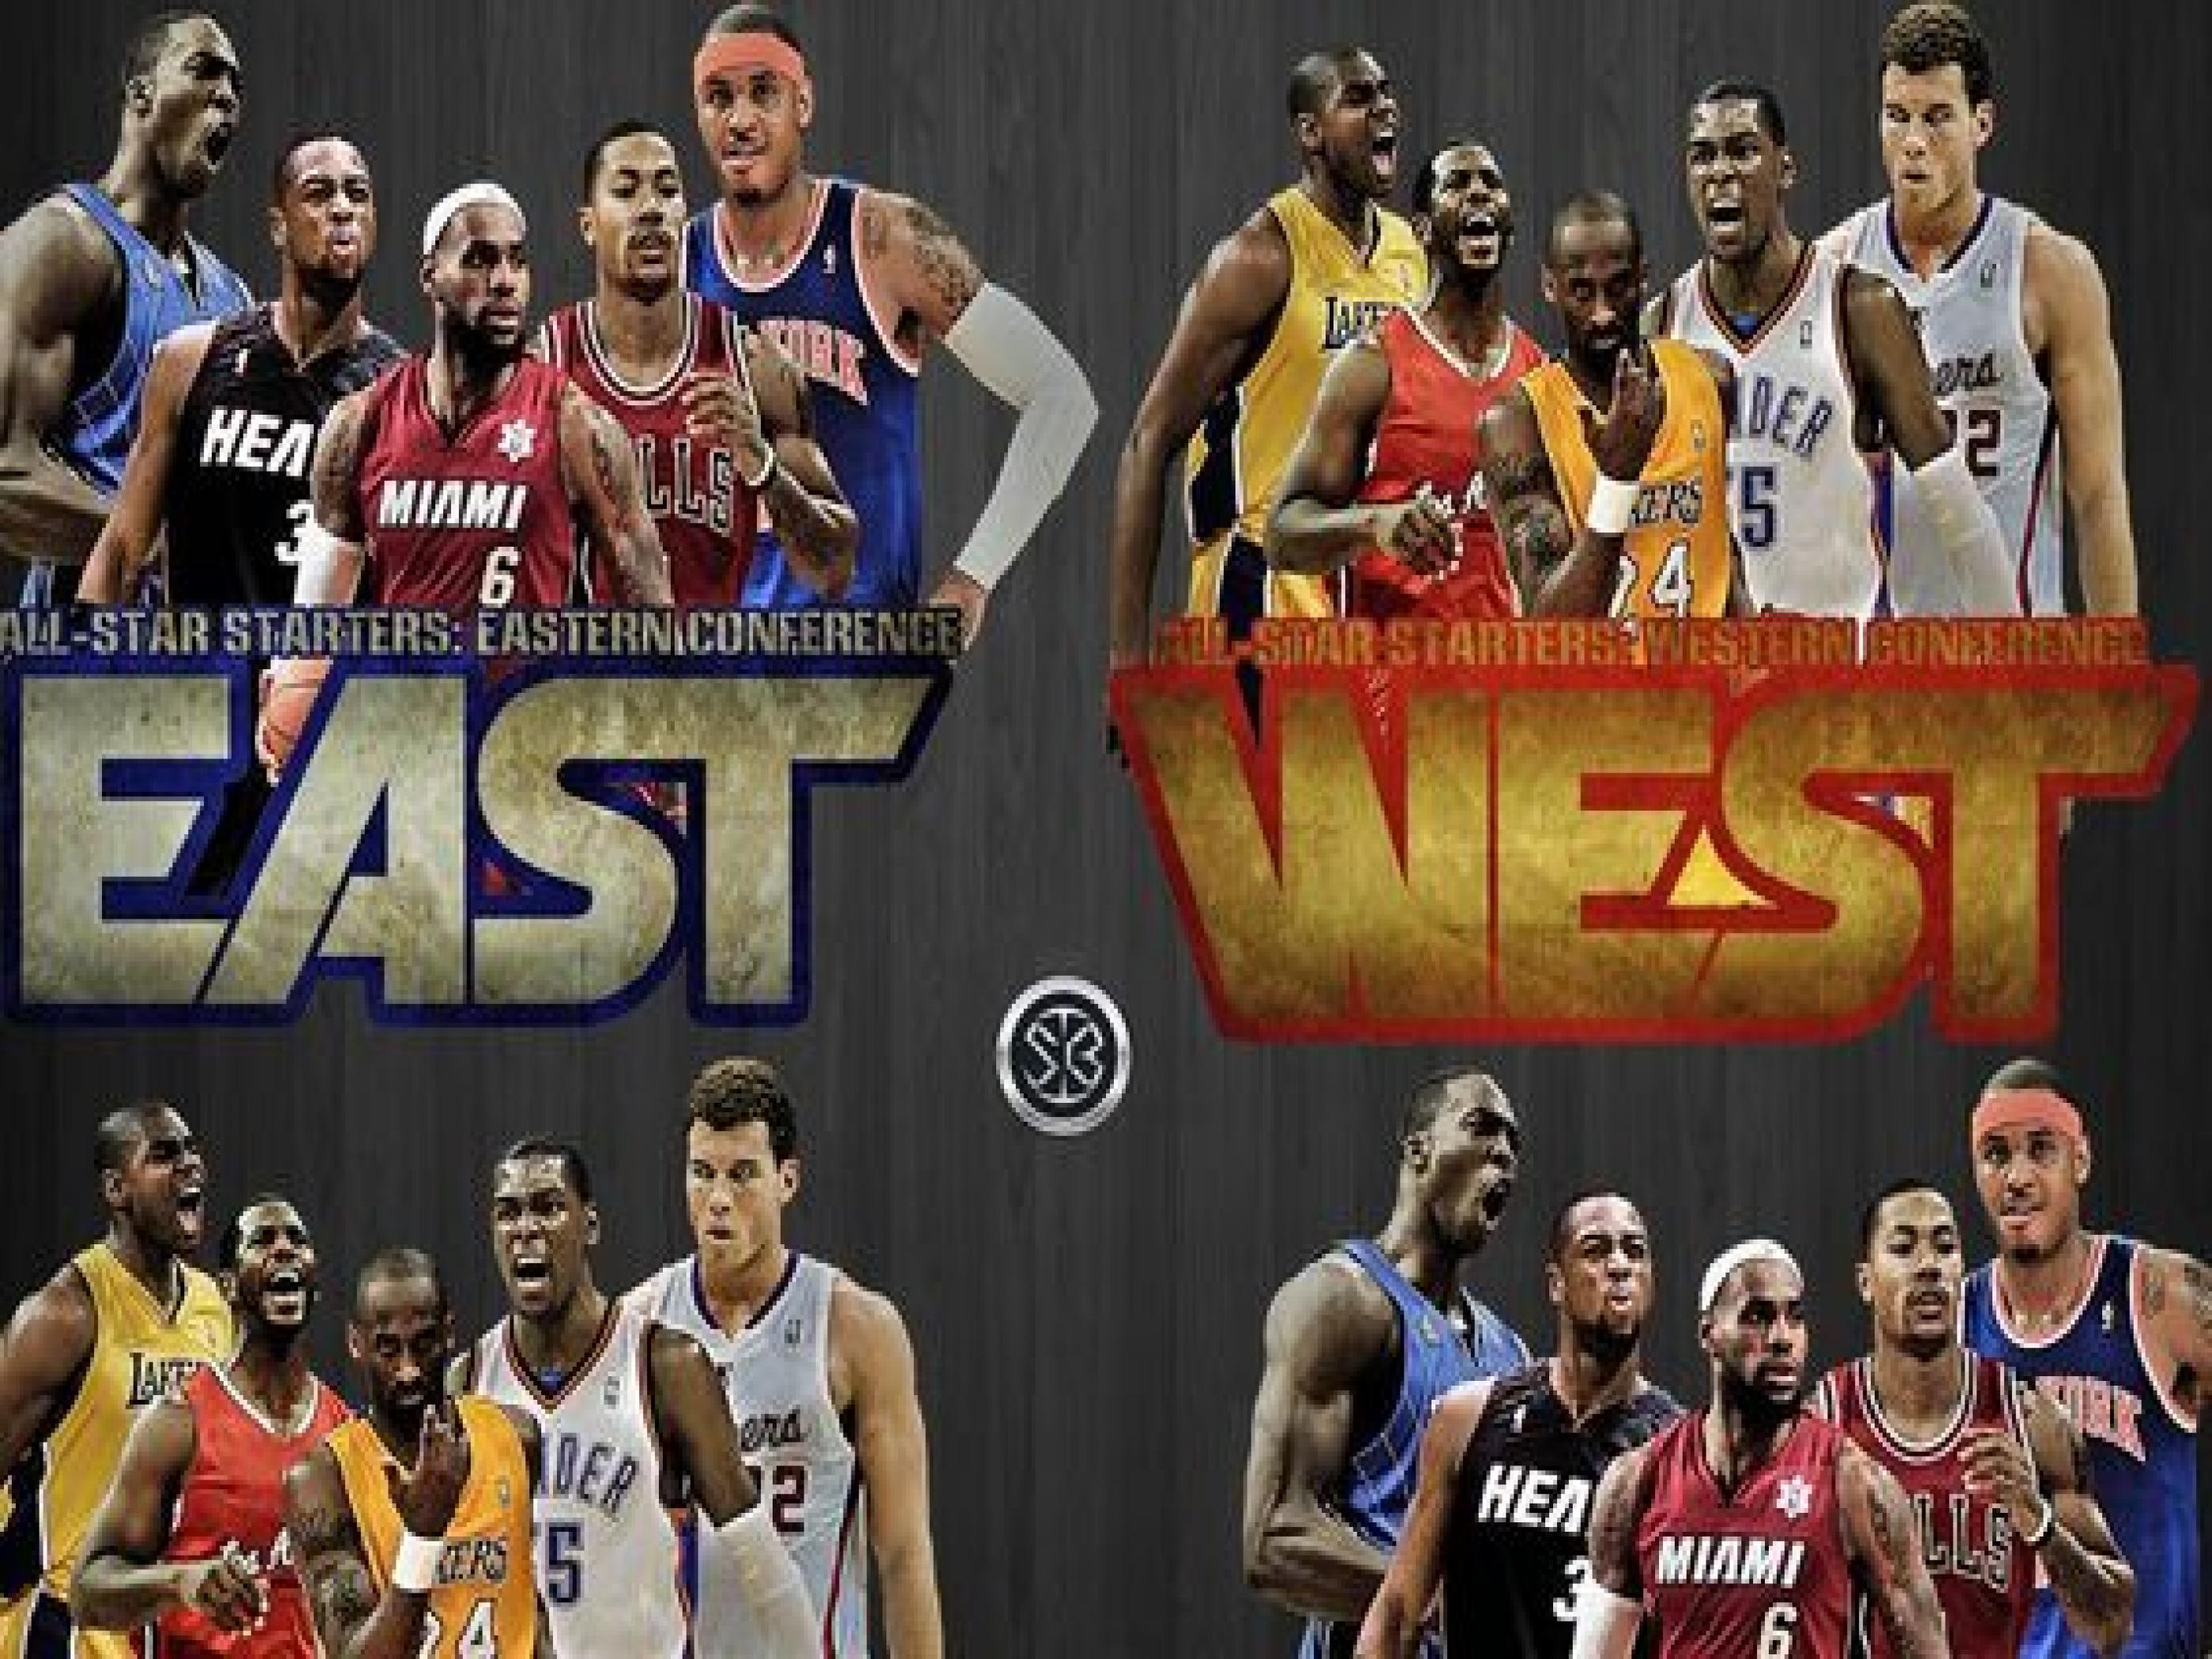 NBA Legends Wallpapers Top Free NBA Legends Backgrounds WallpaperAccess